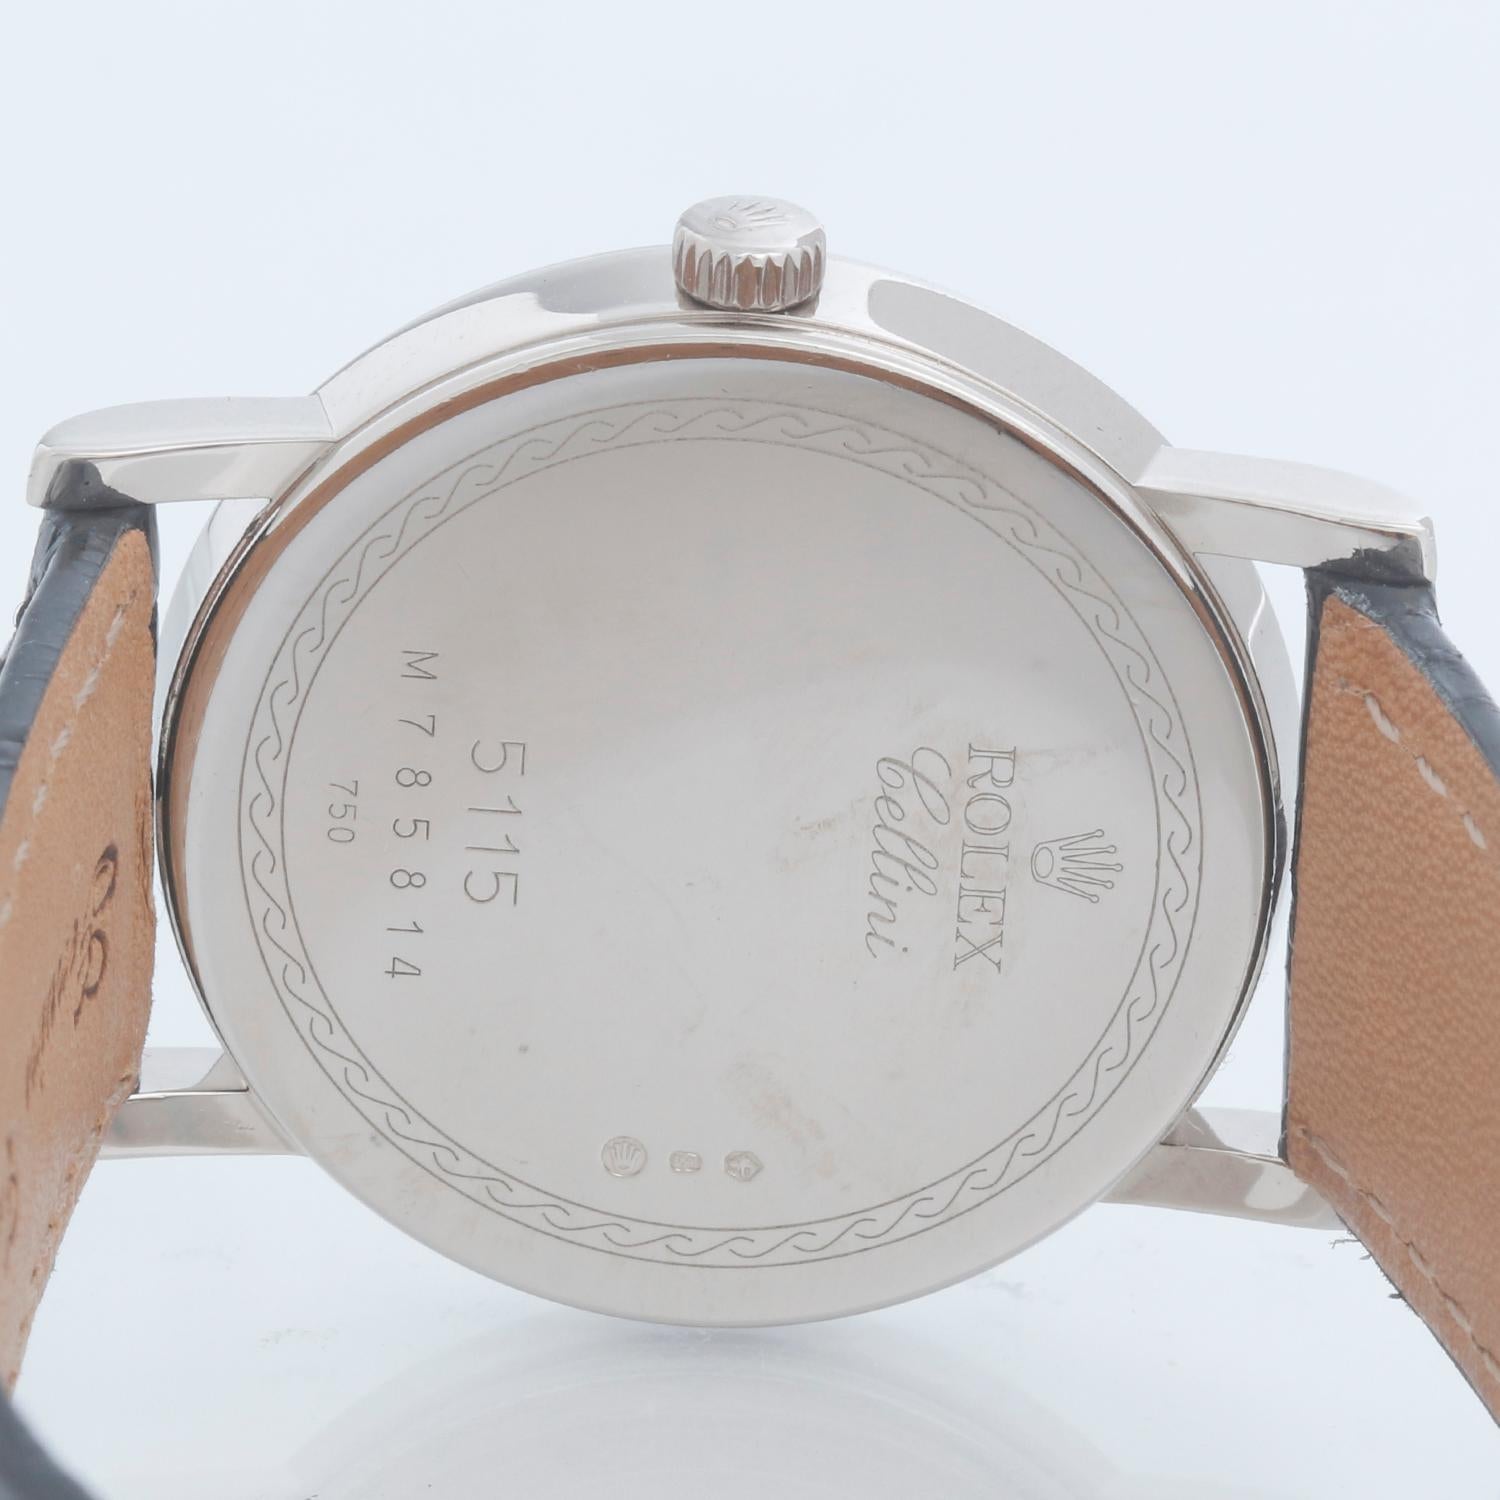 Rolex Cellini Classic 18k White Gold Men's Watch 5115/9 In Excellent Condition In Dallas, TX